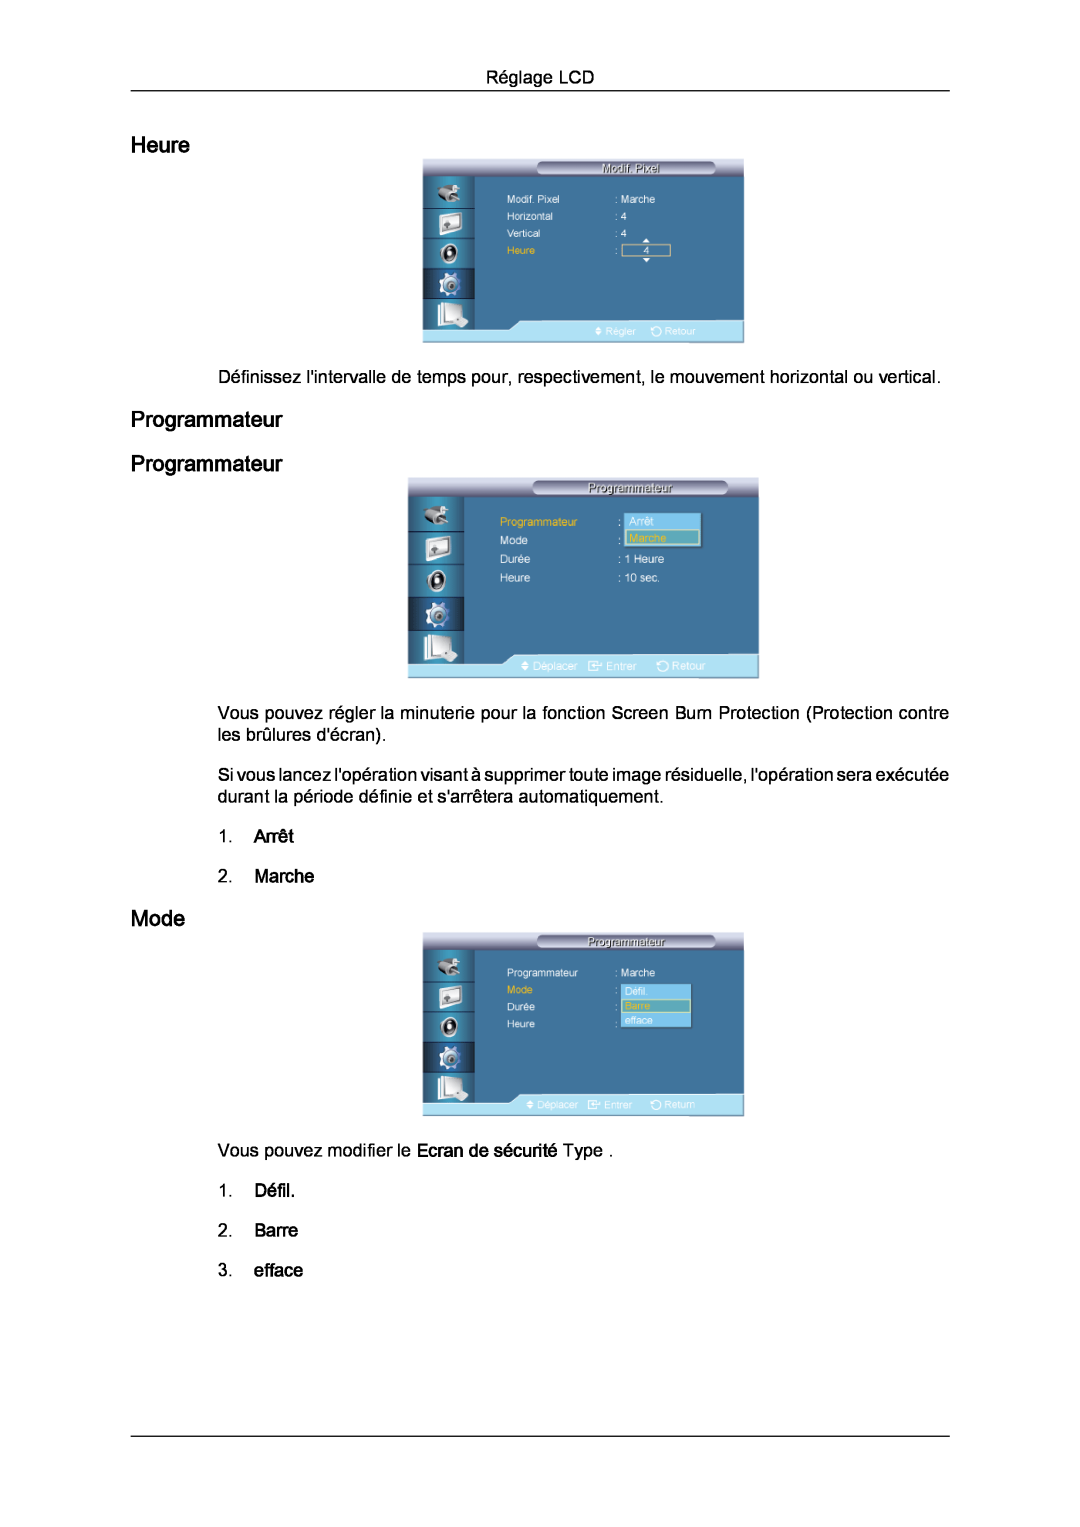 Samsung LH70TCSMBG/EN manual Heure, Programmateur Programmateur, 1. Défil 2. Barre 3. efface, Mode, Arrêt 2. Marche 